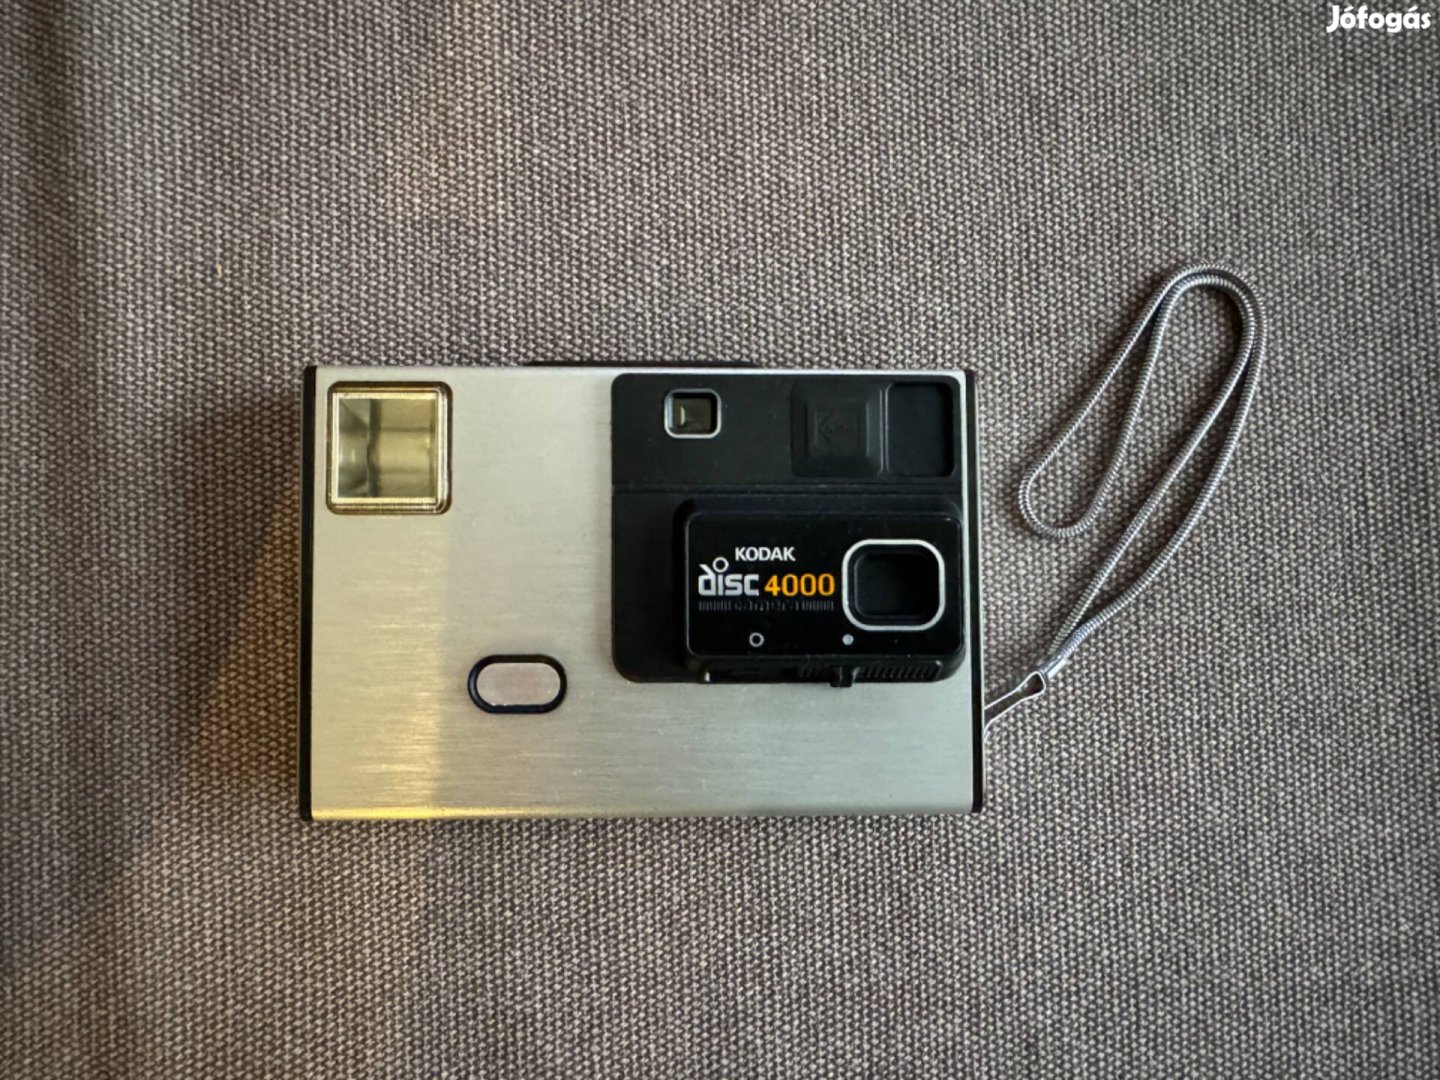 Kodak disc 4000 fényképezőgép